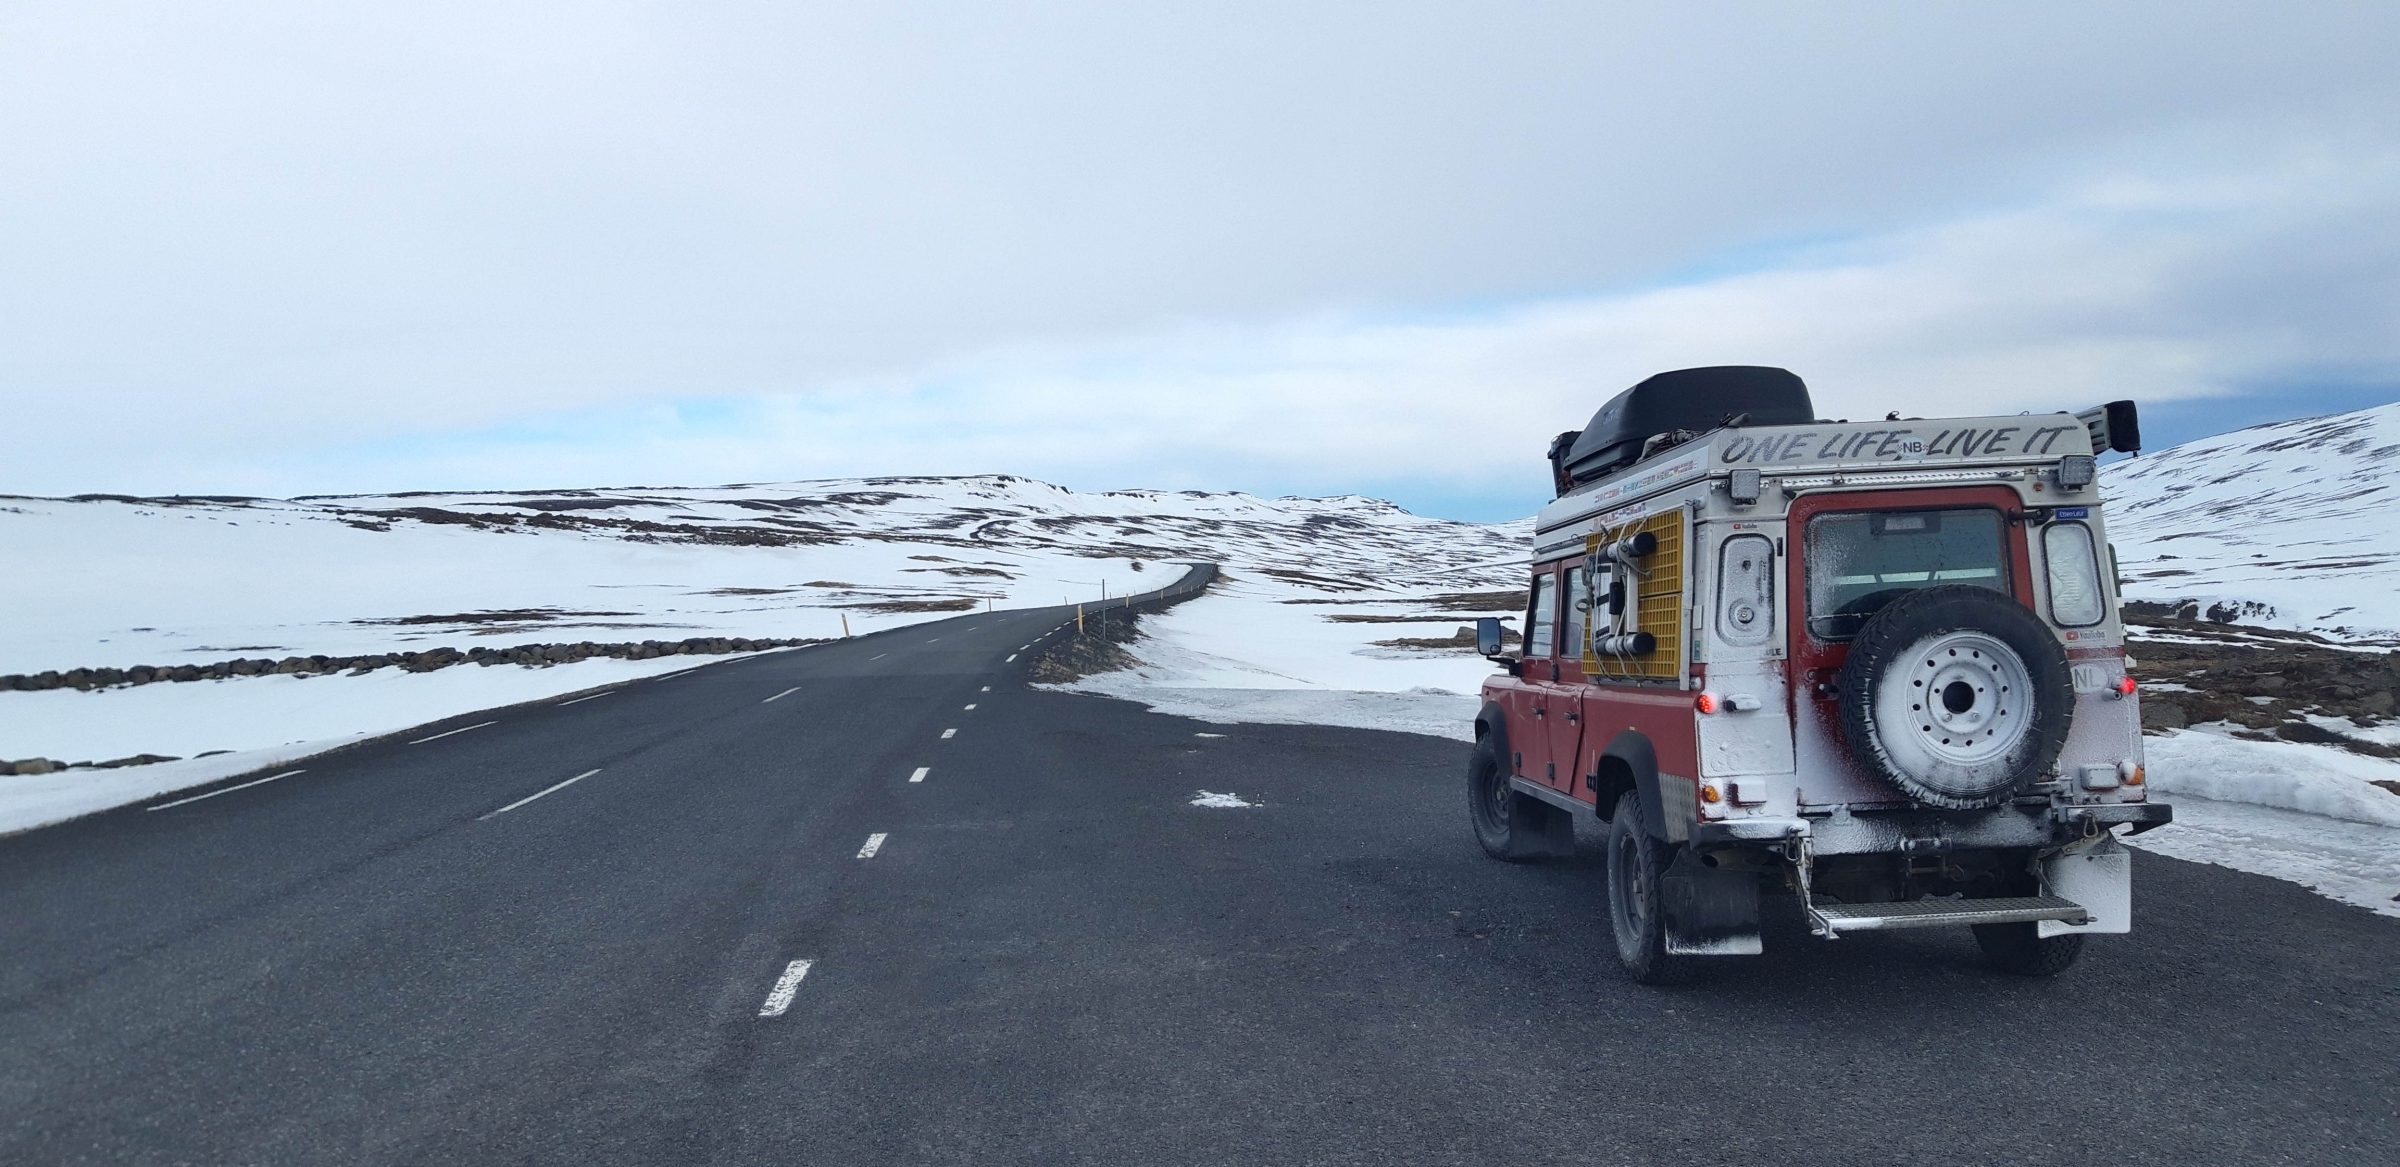 Dzień 2 na Islandii, mała burza śnieżna | Islandia i Wyspy Owcze zimą